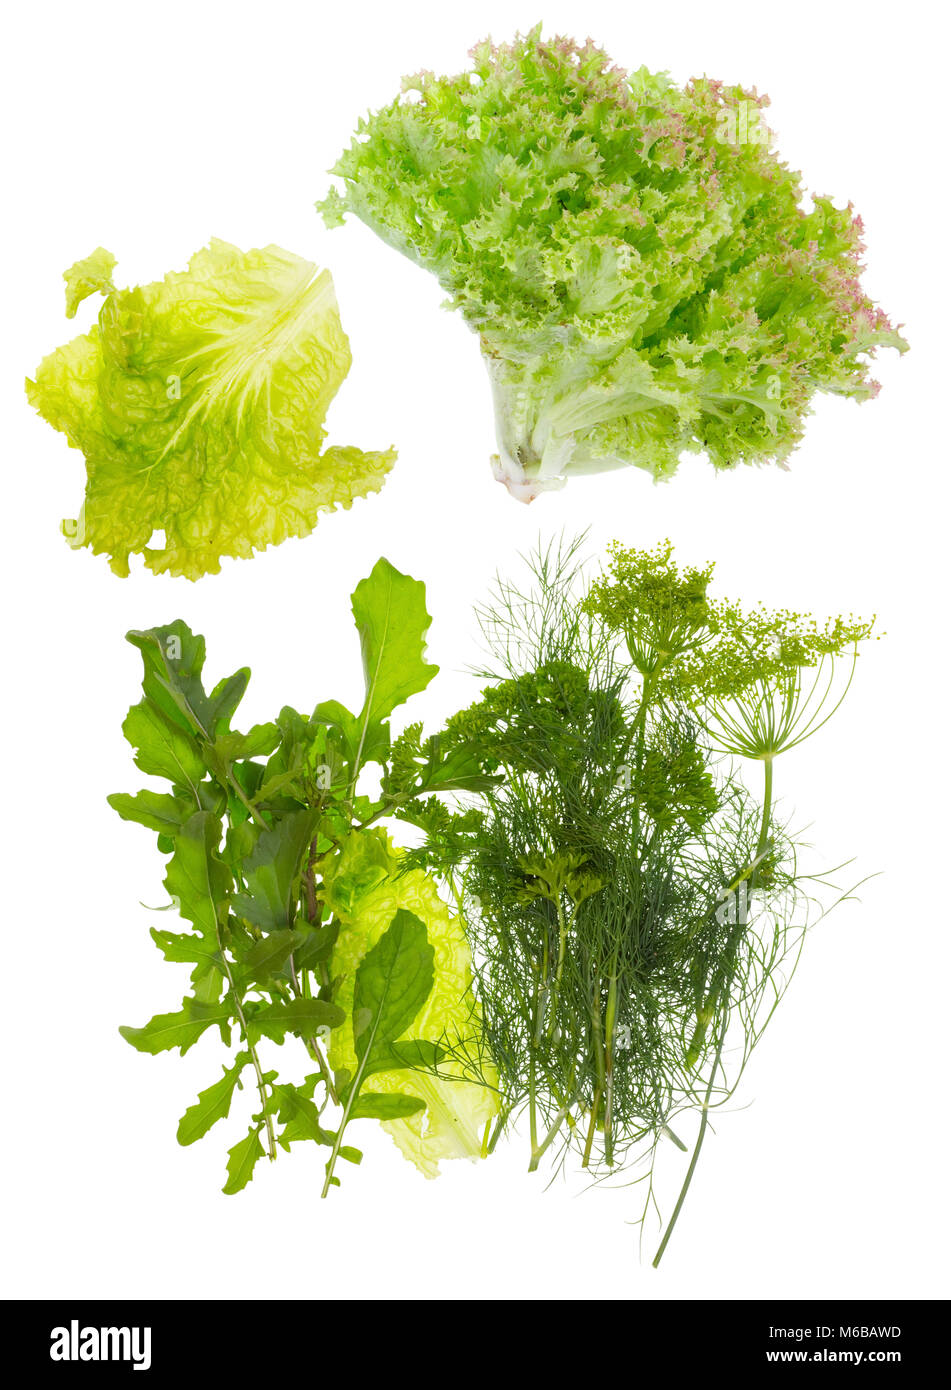 Frischer Salat, Dill, Petersilie und Rucola. Isolierte Top View Studio shot Stockfoto